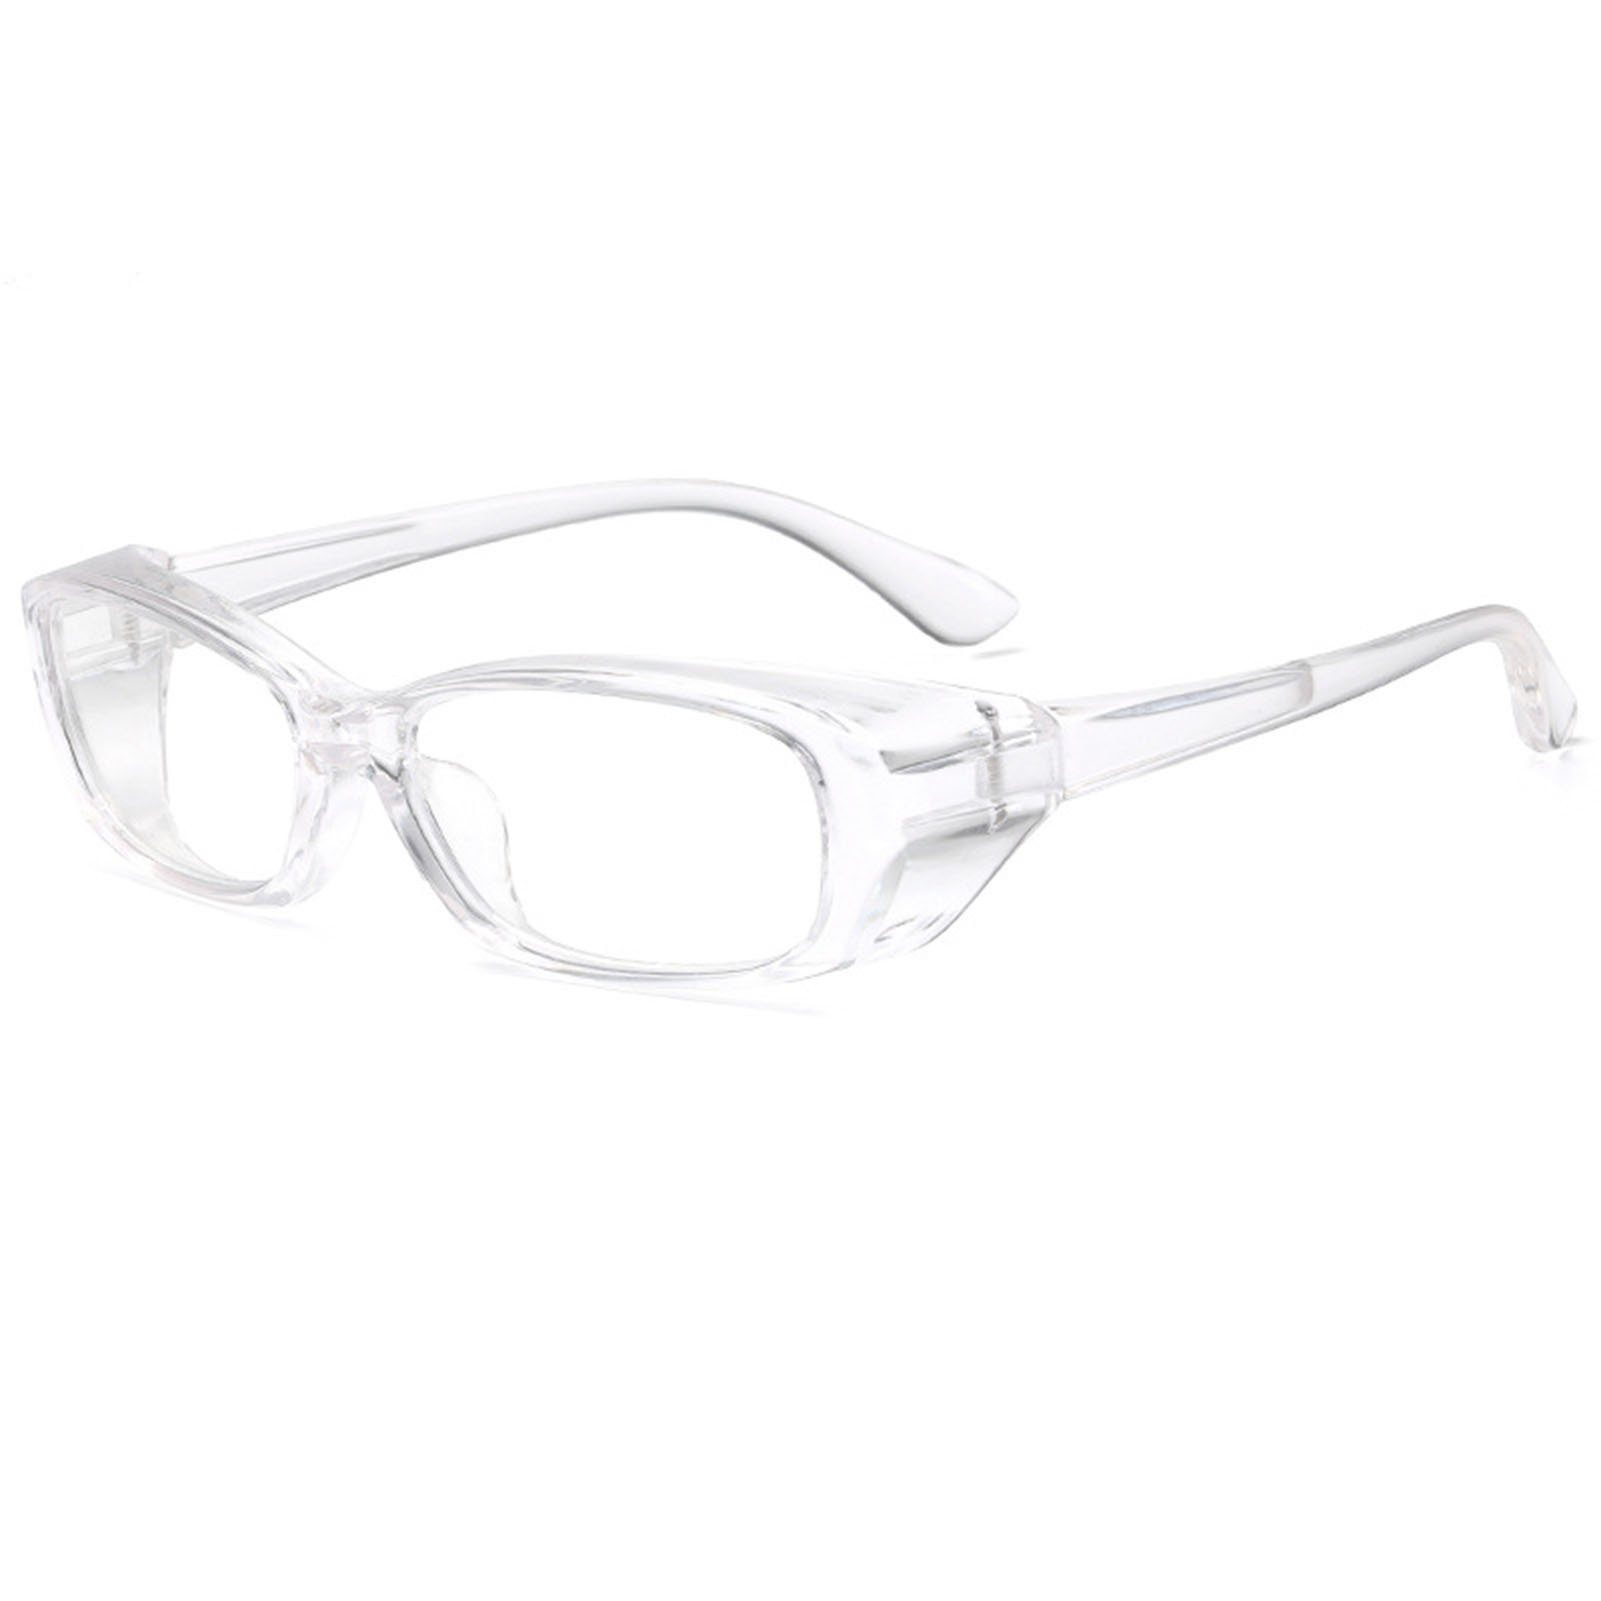 Den Für Brille Außenbereich, Bequeme, Blusmart Brille Anti-Beschlag-Schutzbrille transparent